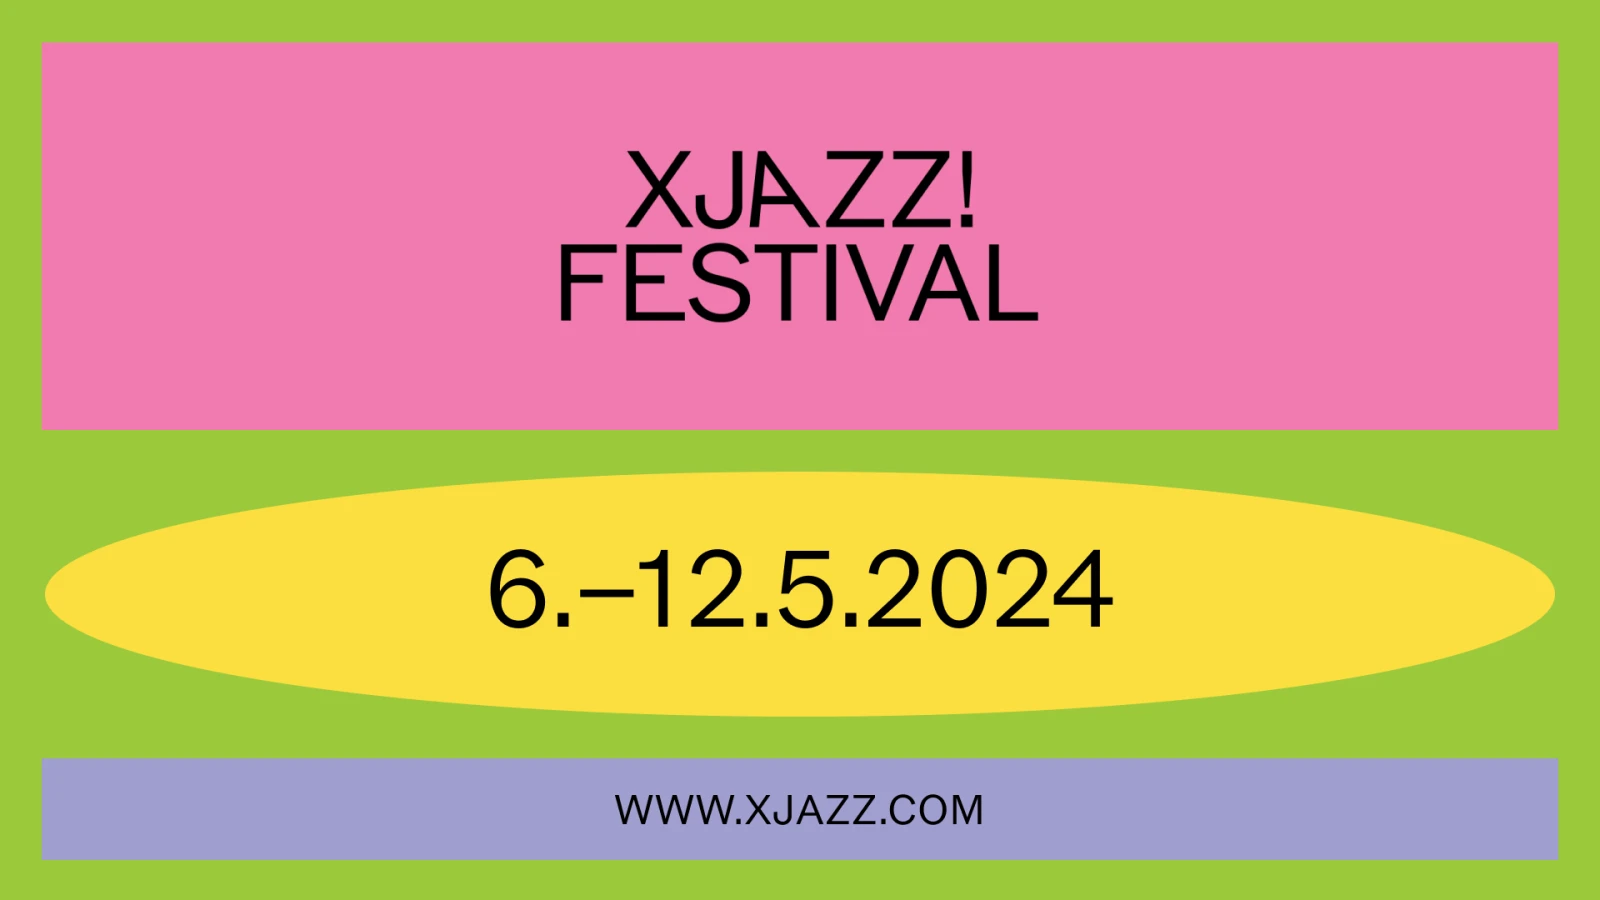 XJAZZ! Festival - Berlin